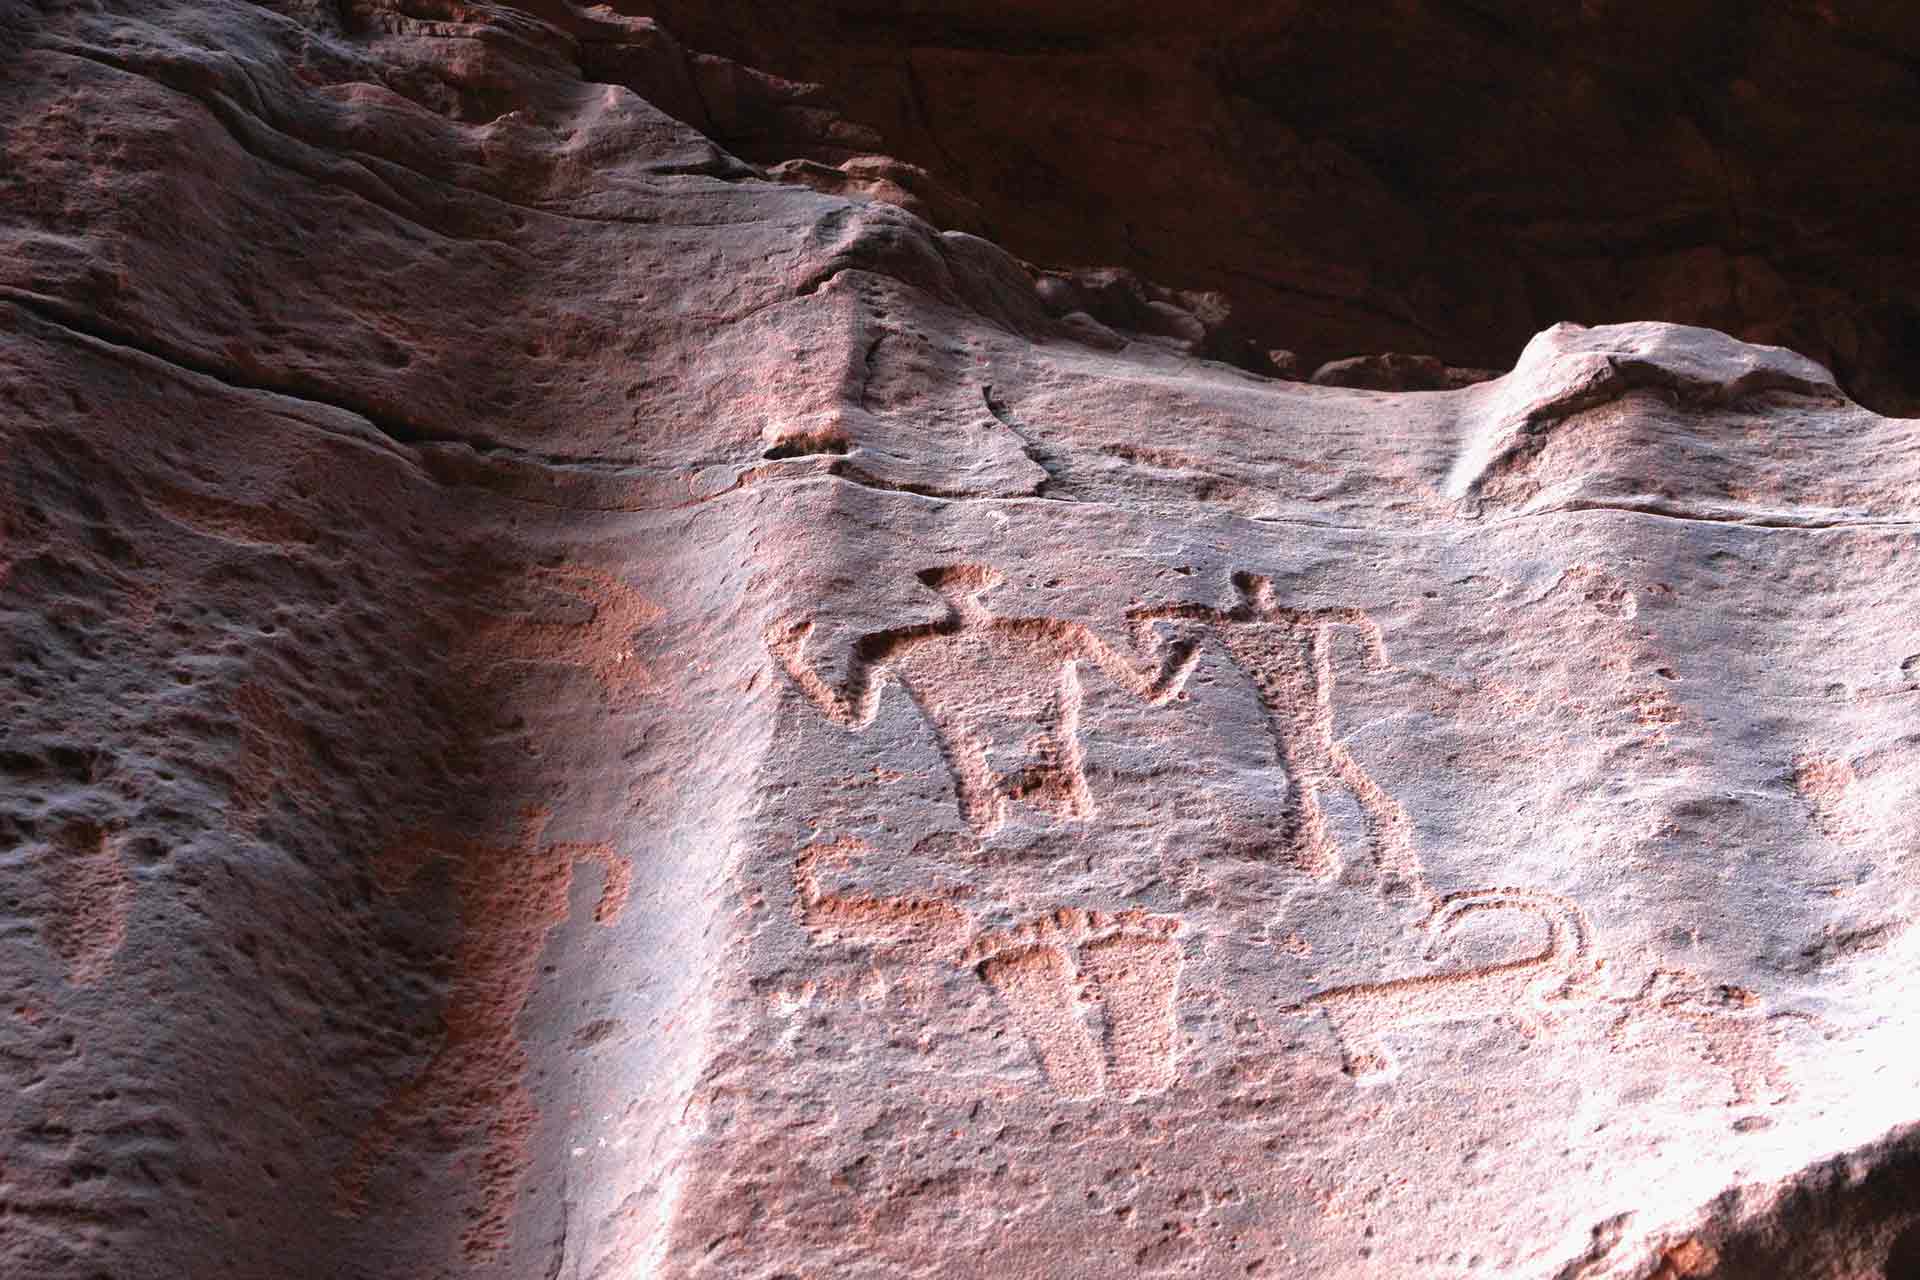 Ancient petroglyphs carved into the walls of Khazali Canyon at Wadi Rum, Jordan